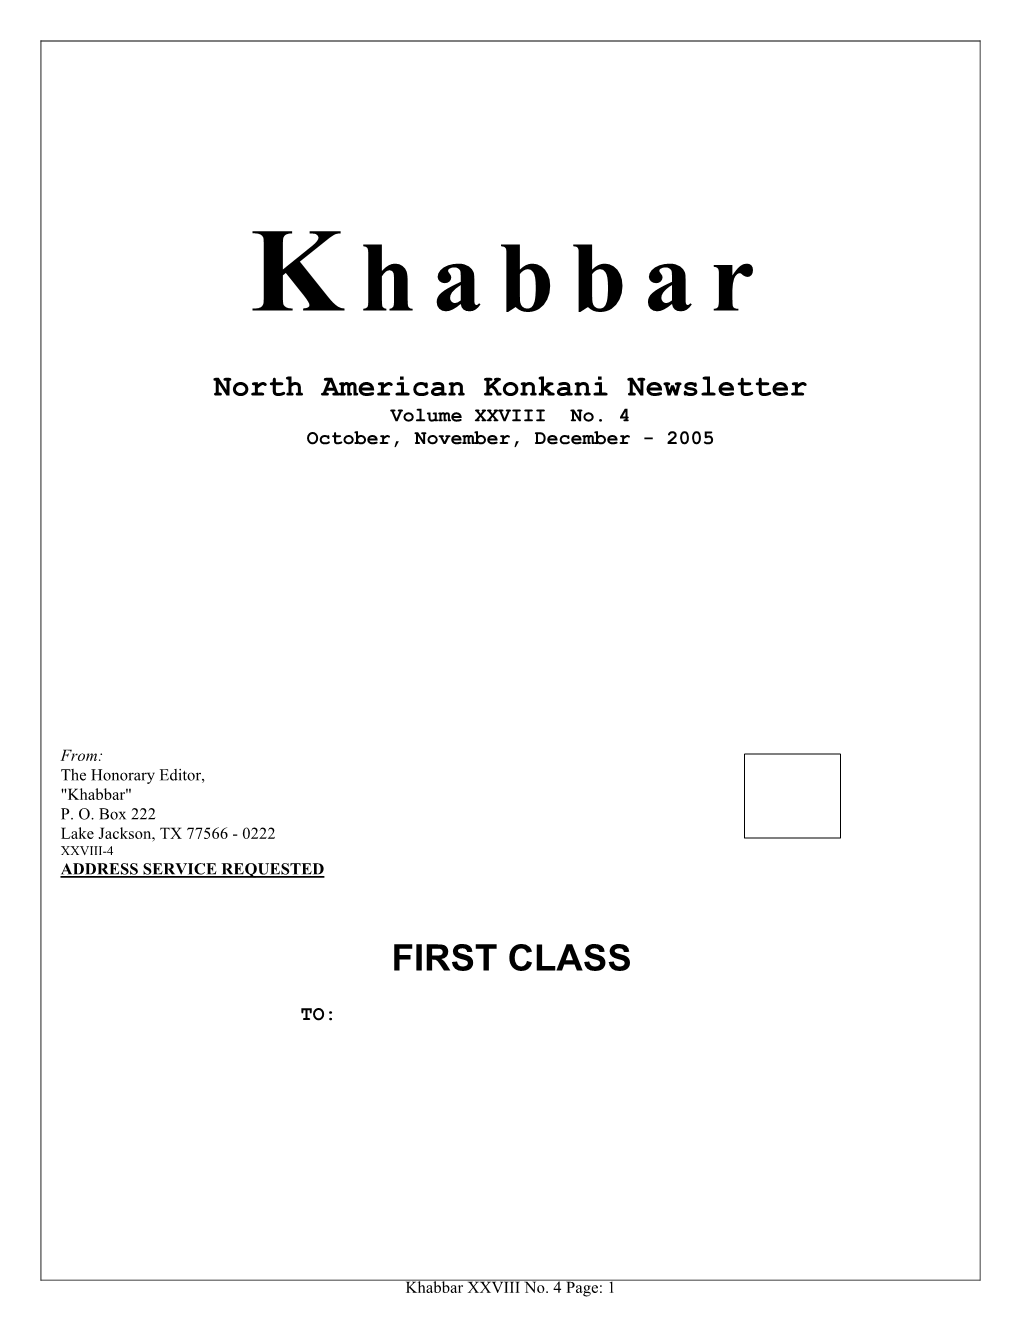 Khabbar Vol. XXVIII No. 4